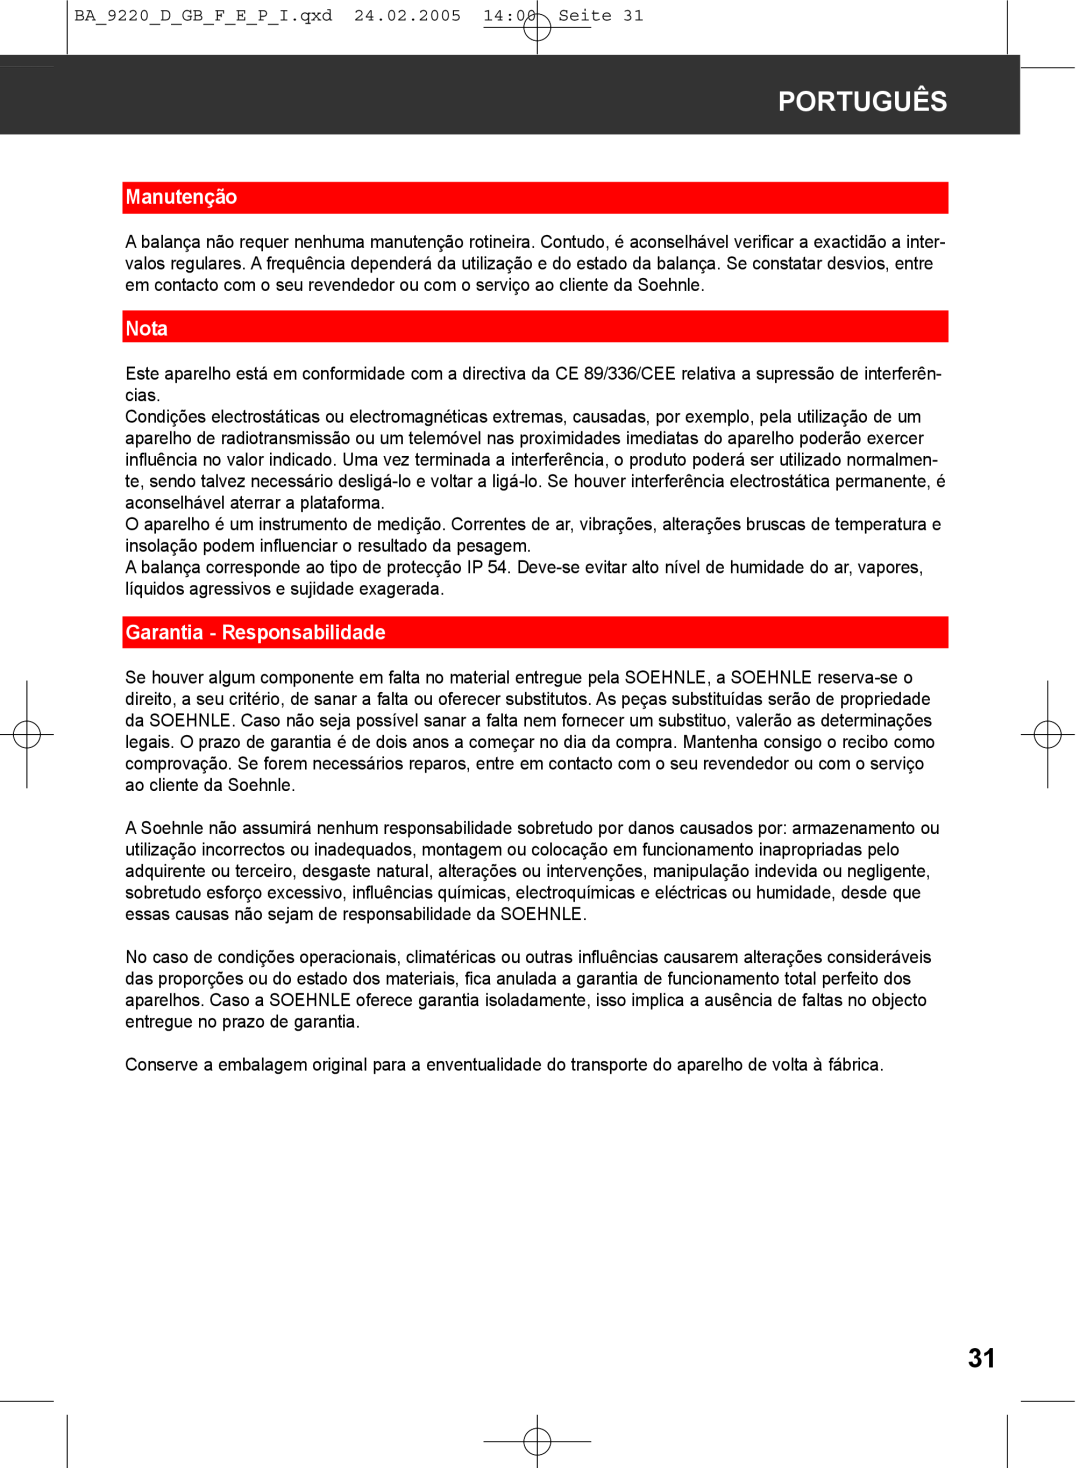 Soehnle 9220 manual Manutenção, Garantia - Responsabilidade, Português, Nota 